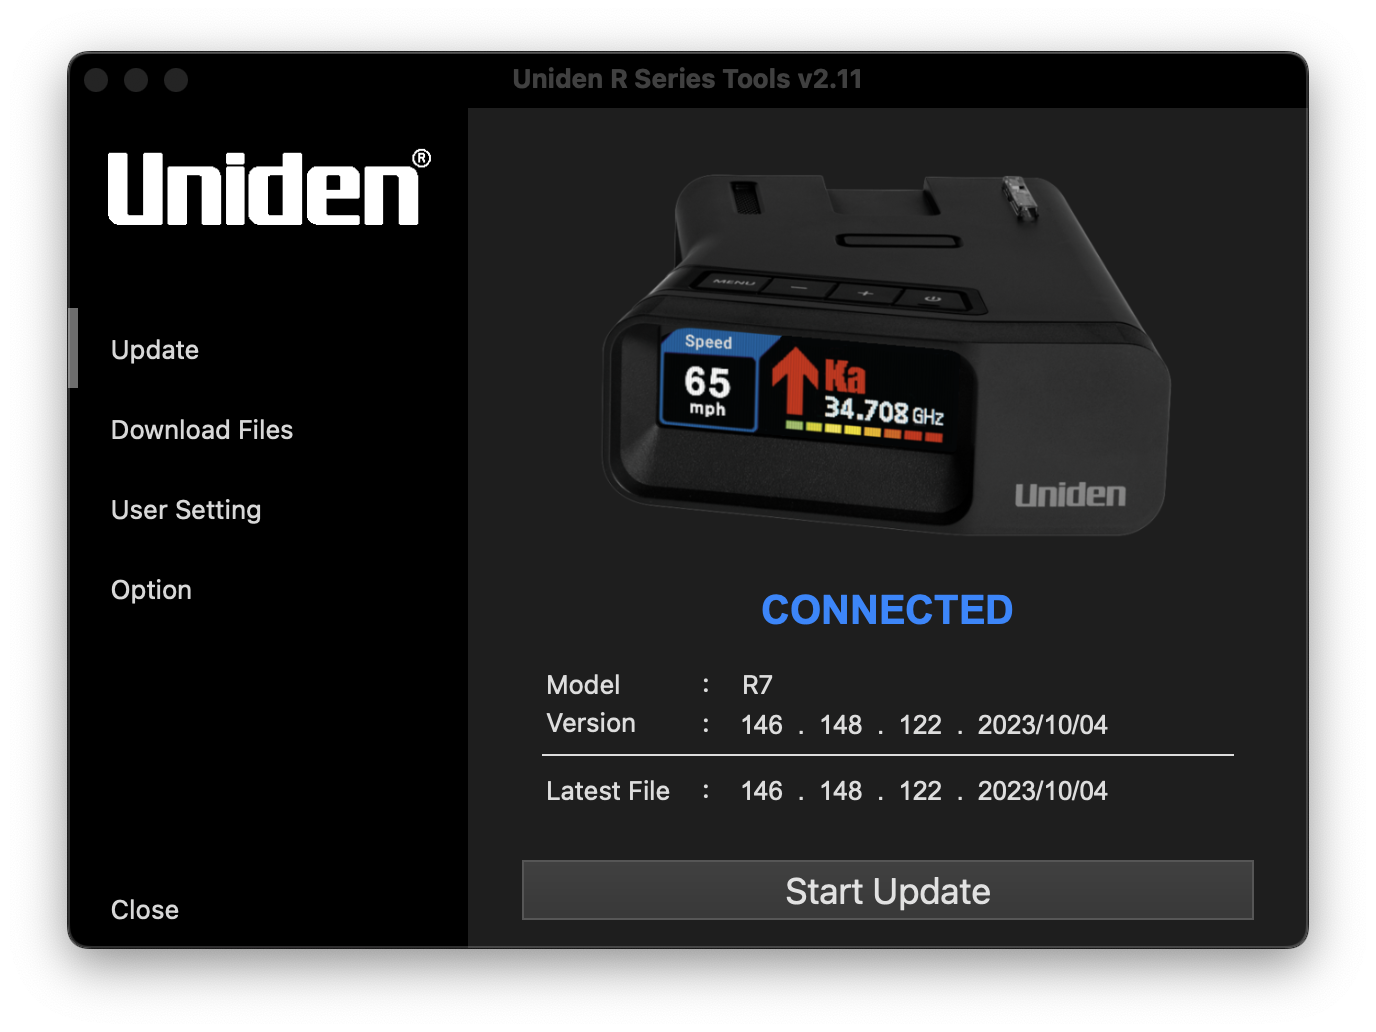 Uniden R7 update software 1.46